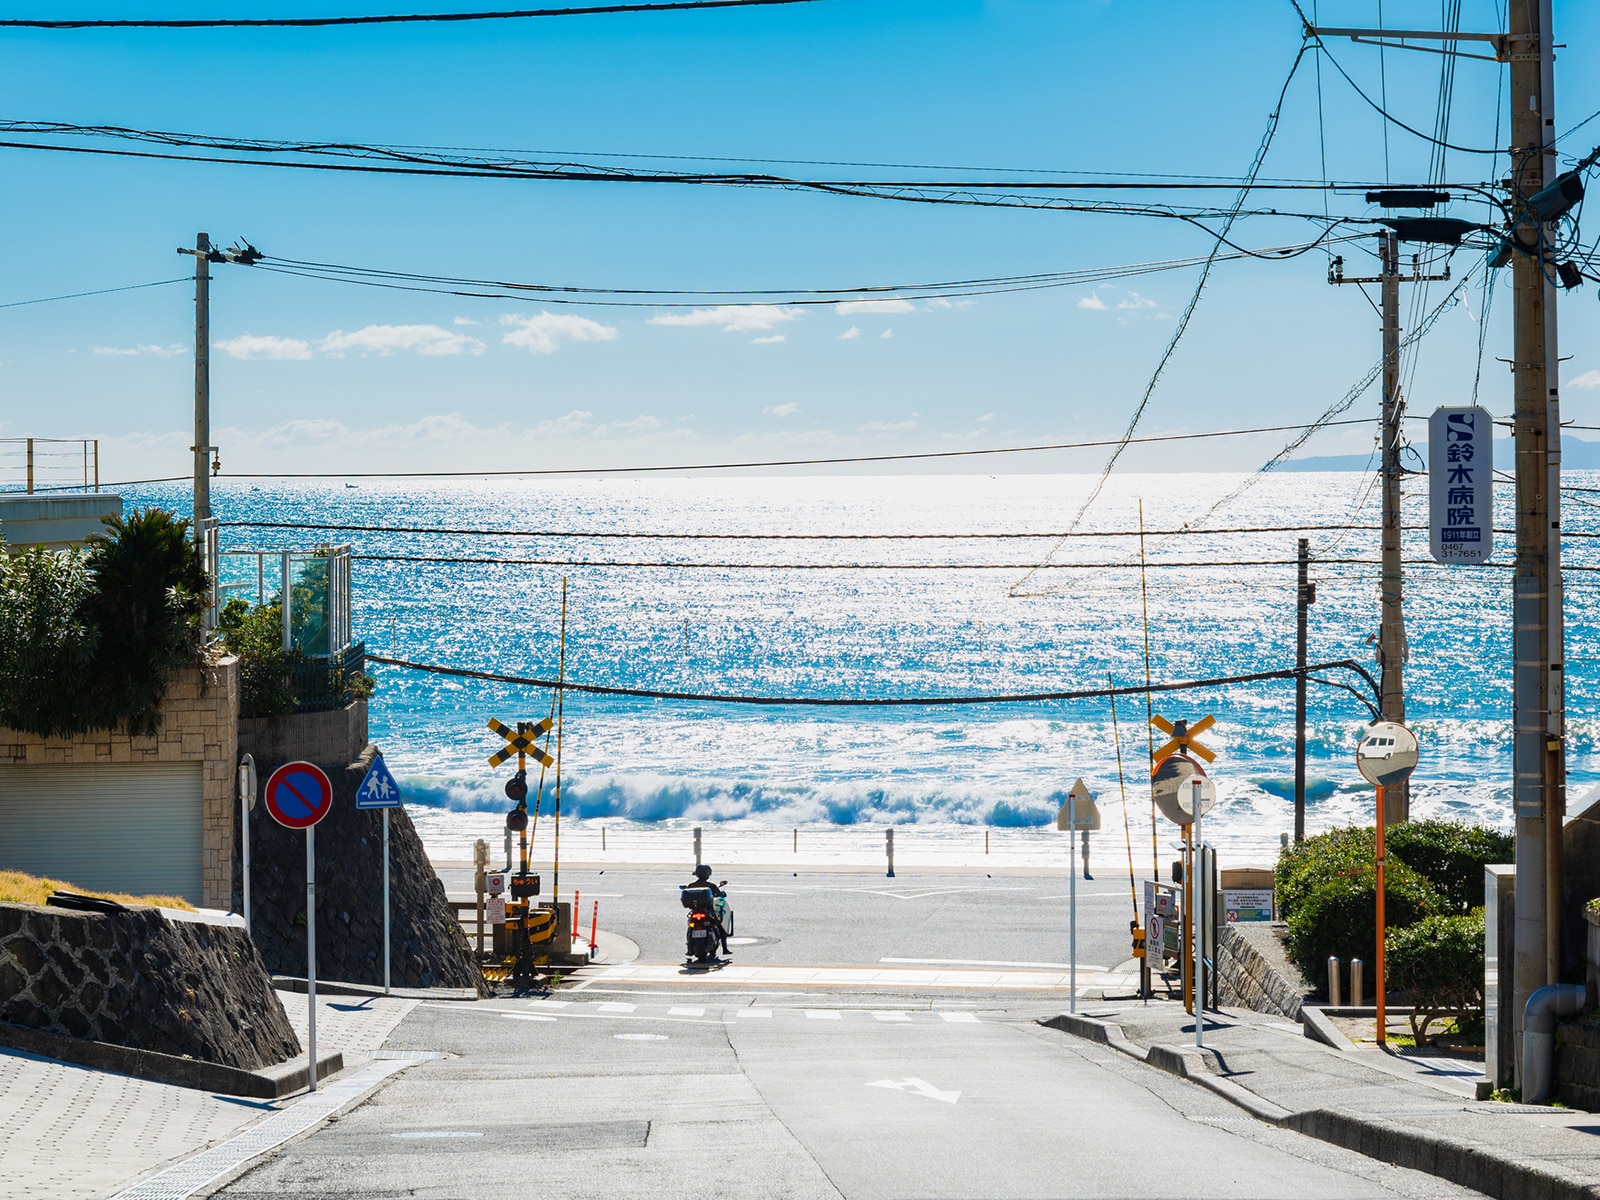 「ビーチが美しい」と思う都道府県ランキング